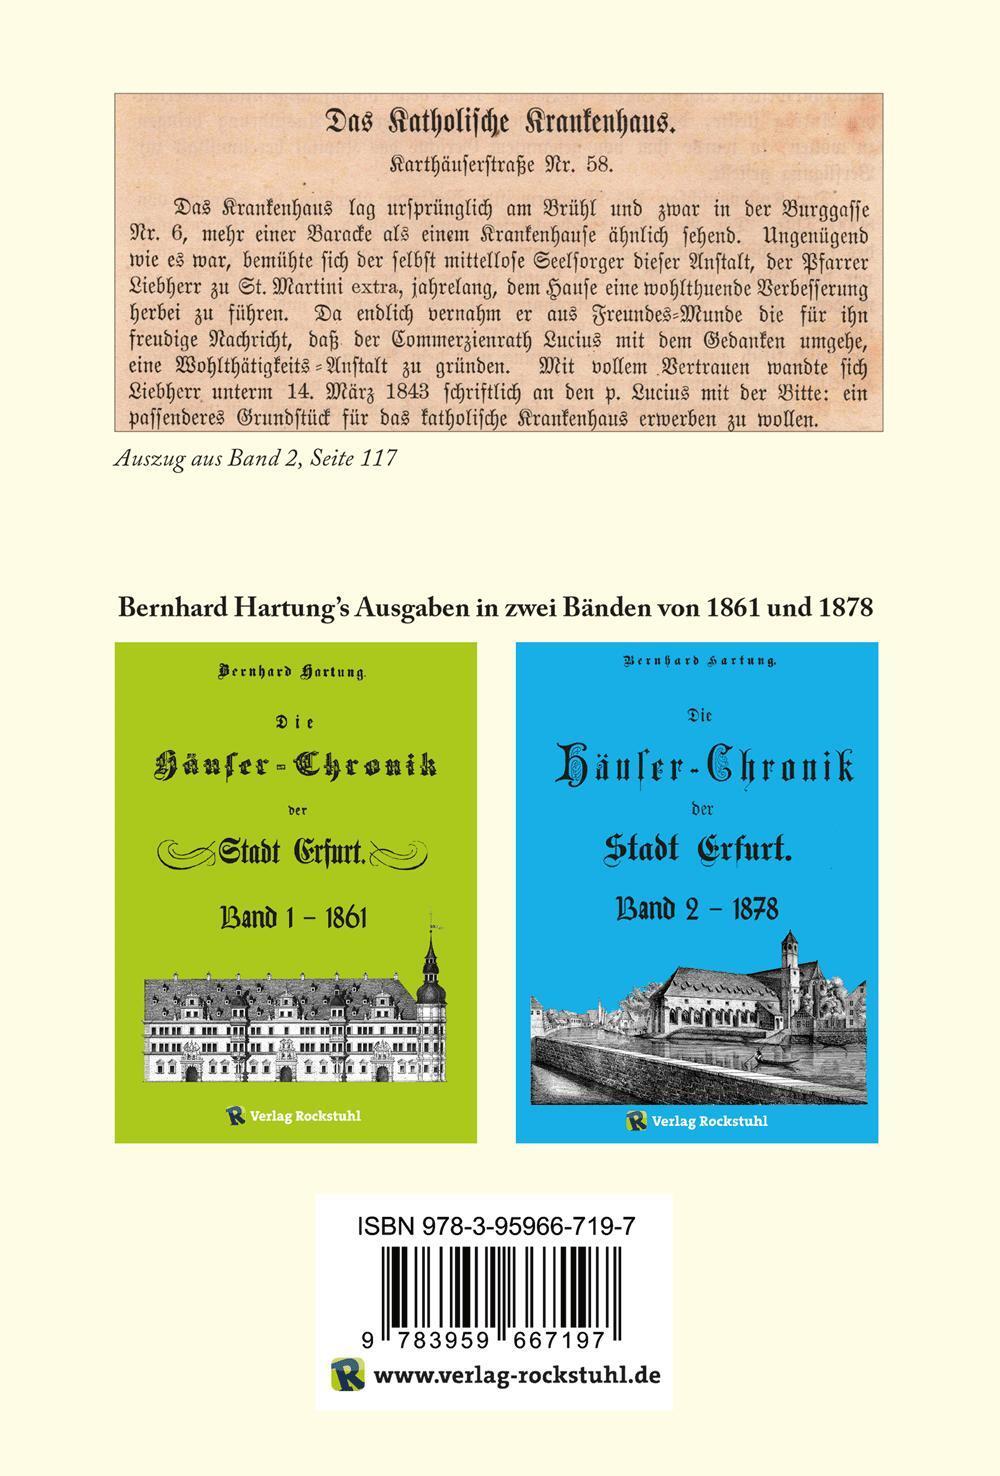 Rückseite: 9783959667197 | Die Häuser-Chronik der Stadt Erfurt 1878 - Band 2 von 2 | Hartung